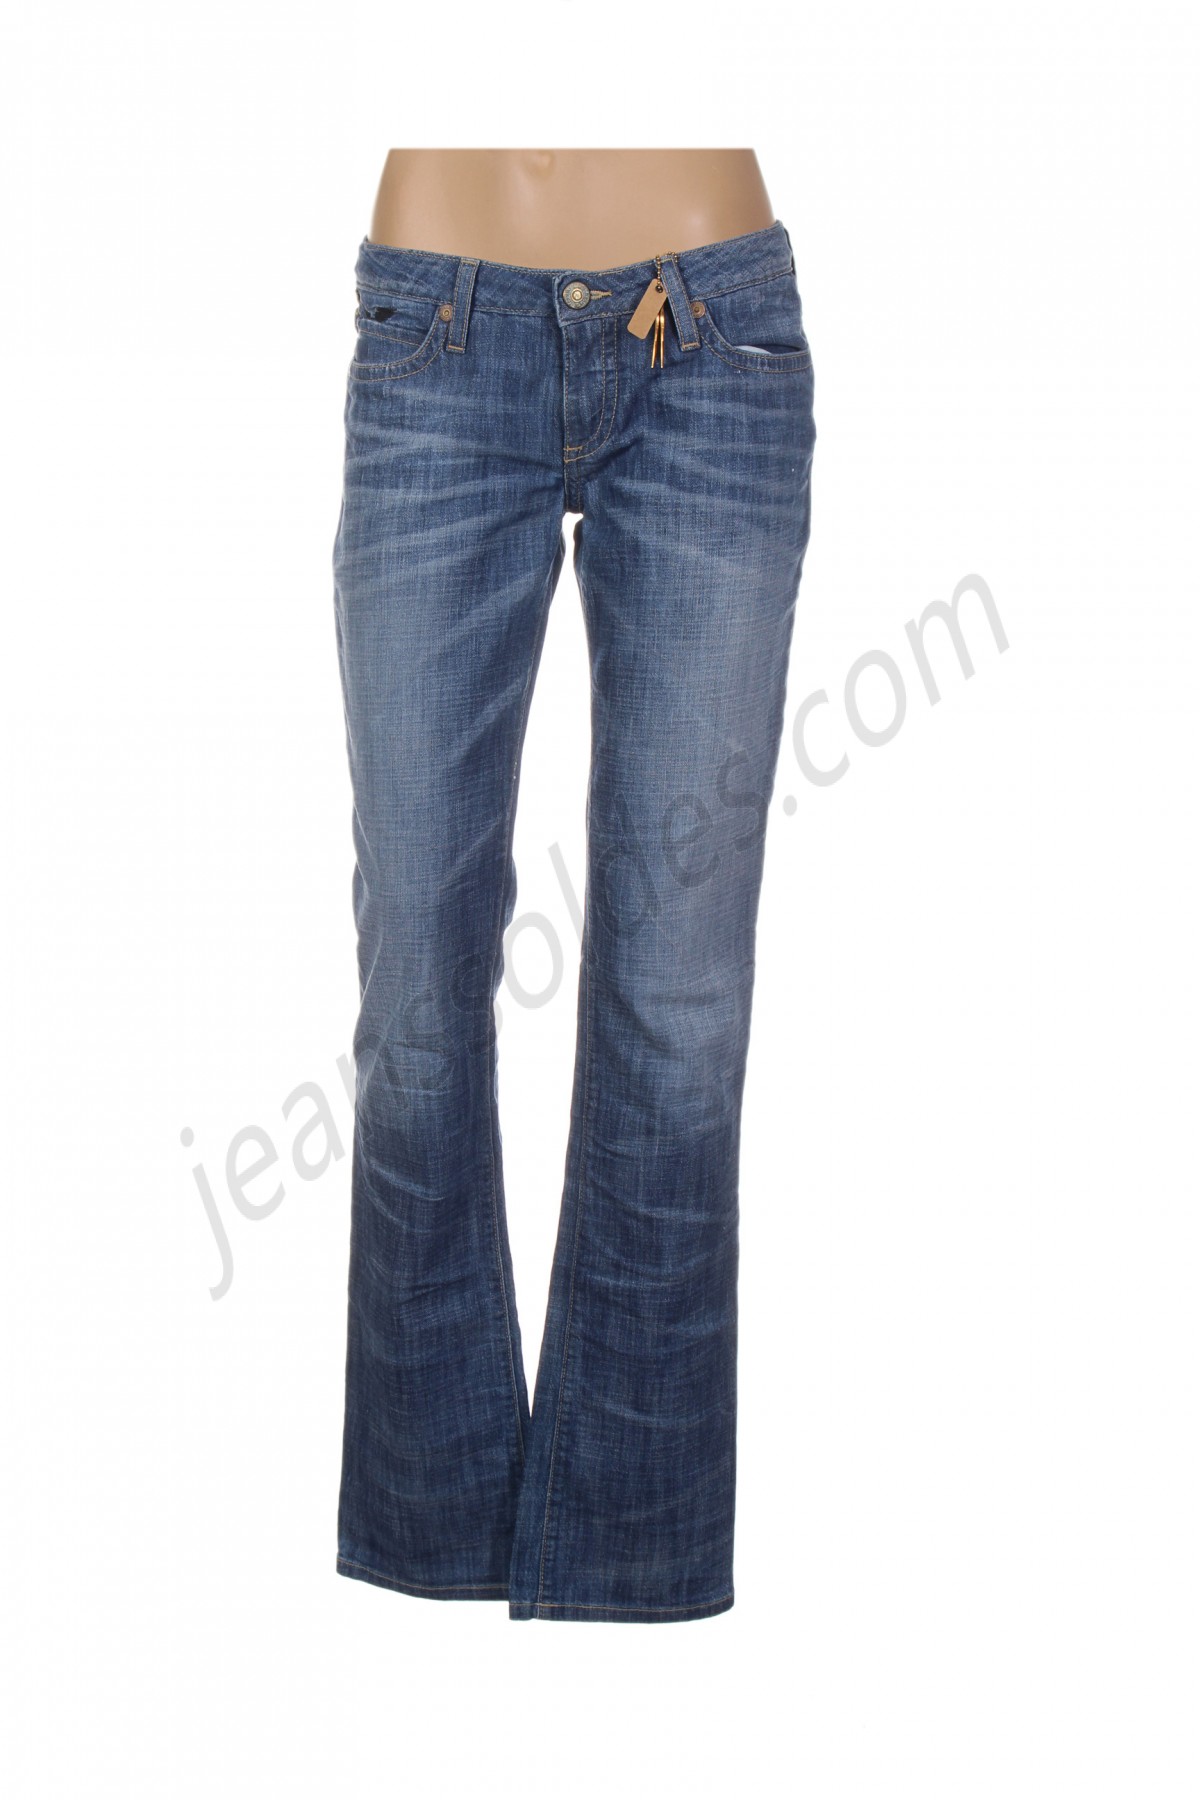 robin's jean-Jeans coupe droite prix d’amis - -0